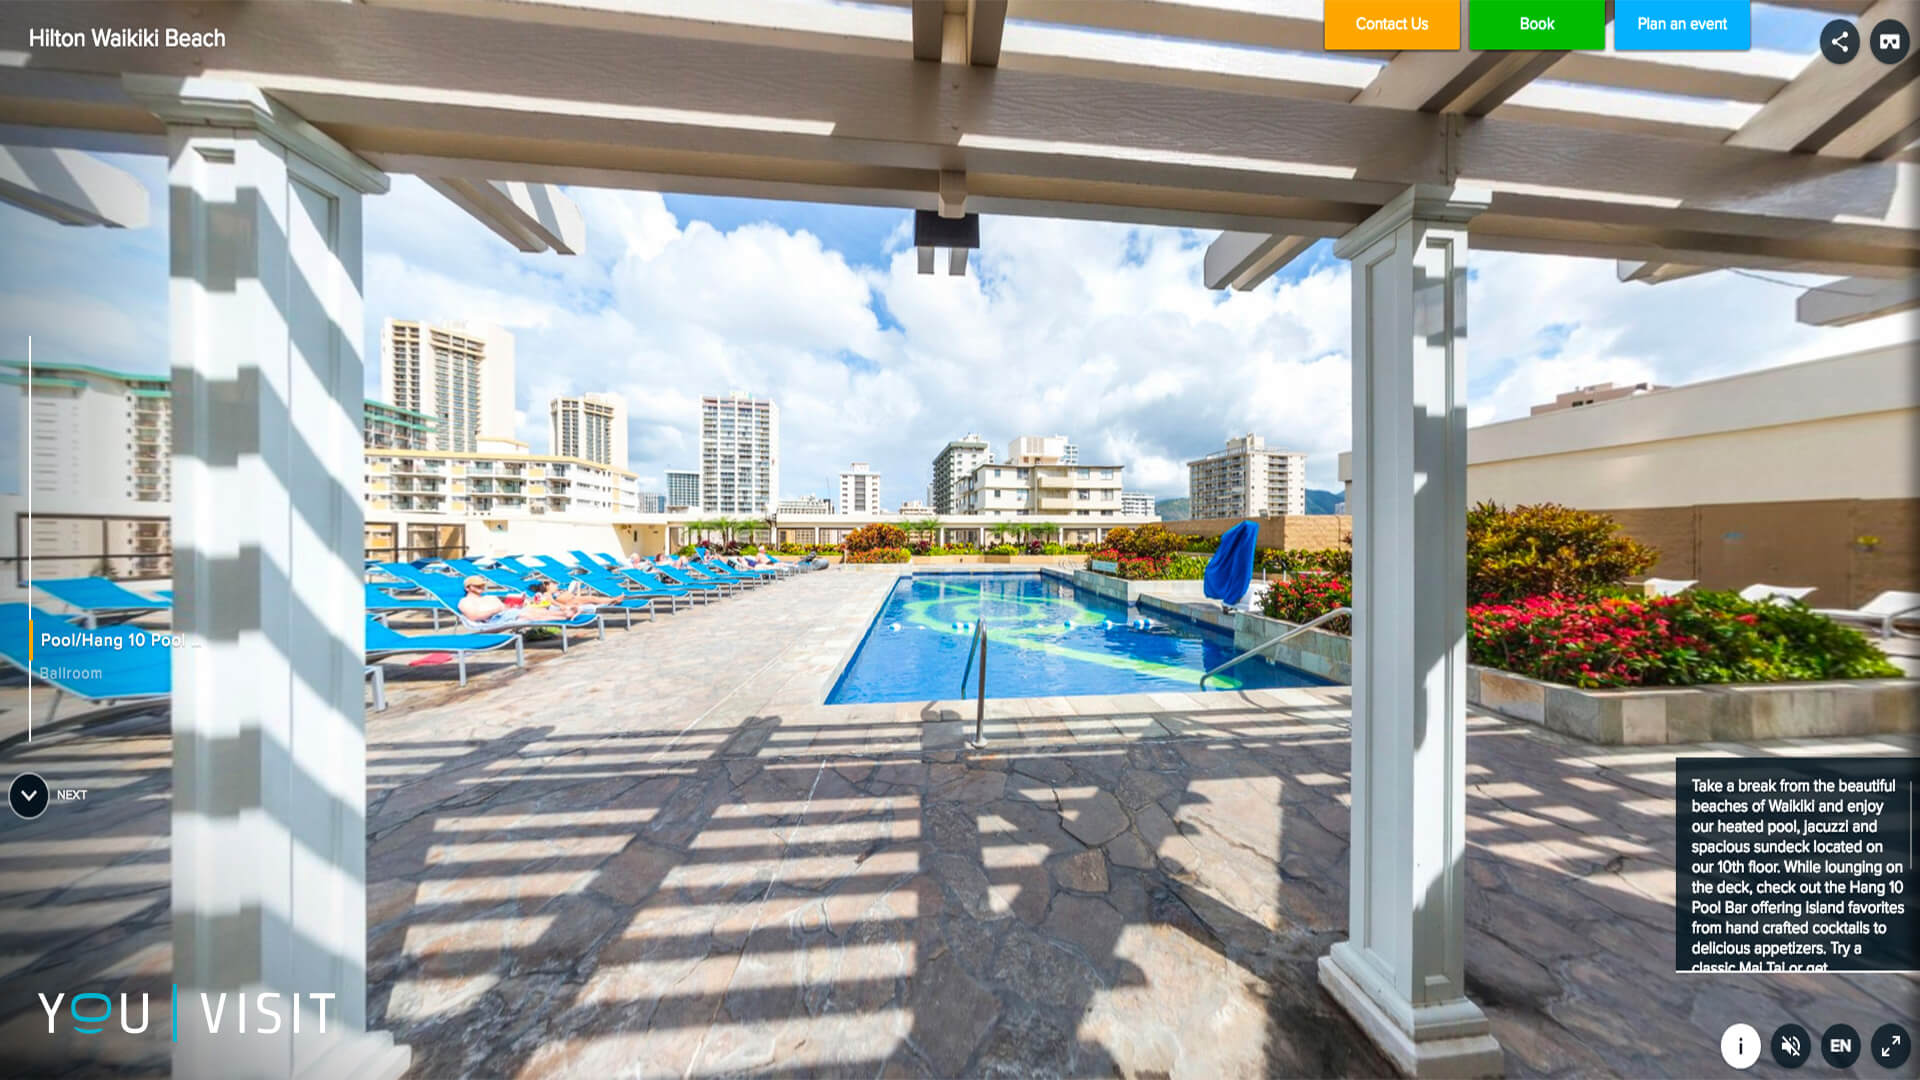 Hilton Waikiki Beach launch virtual reality mobile app